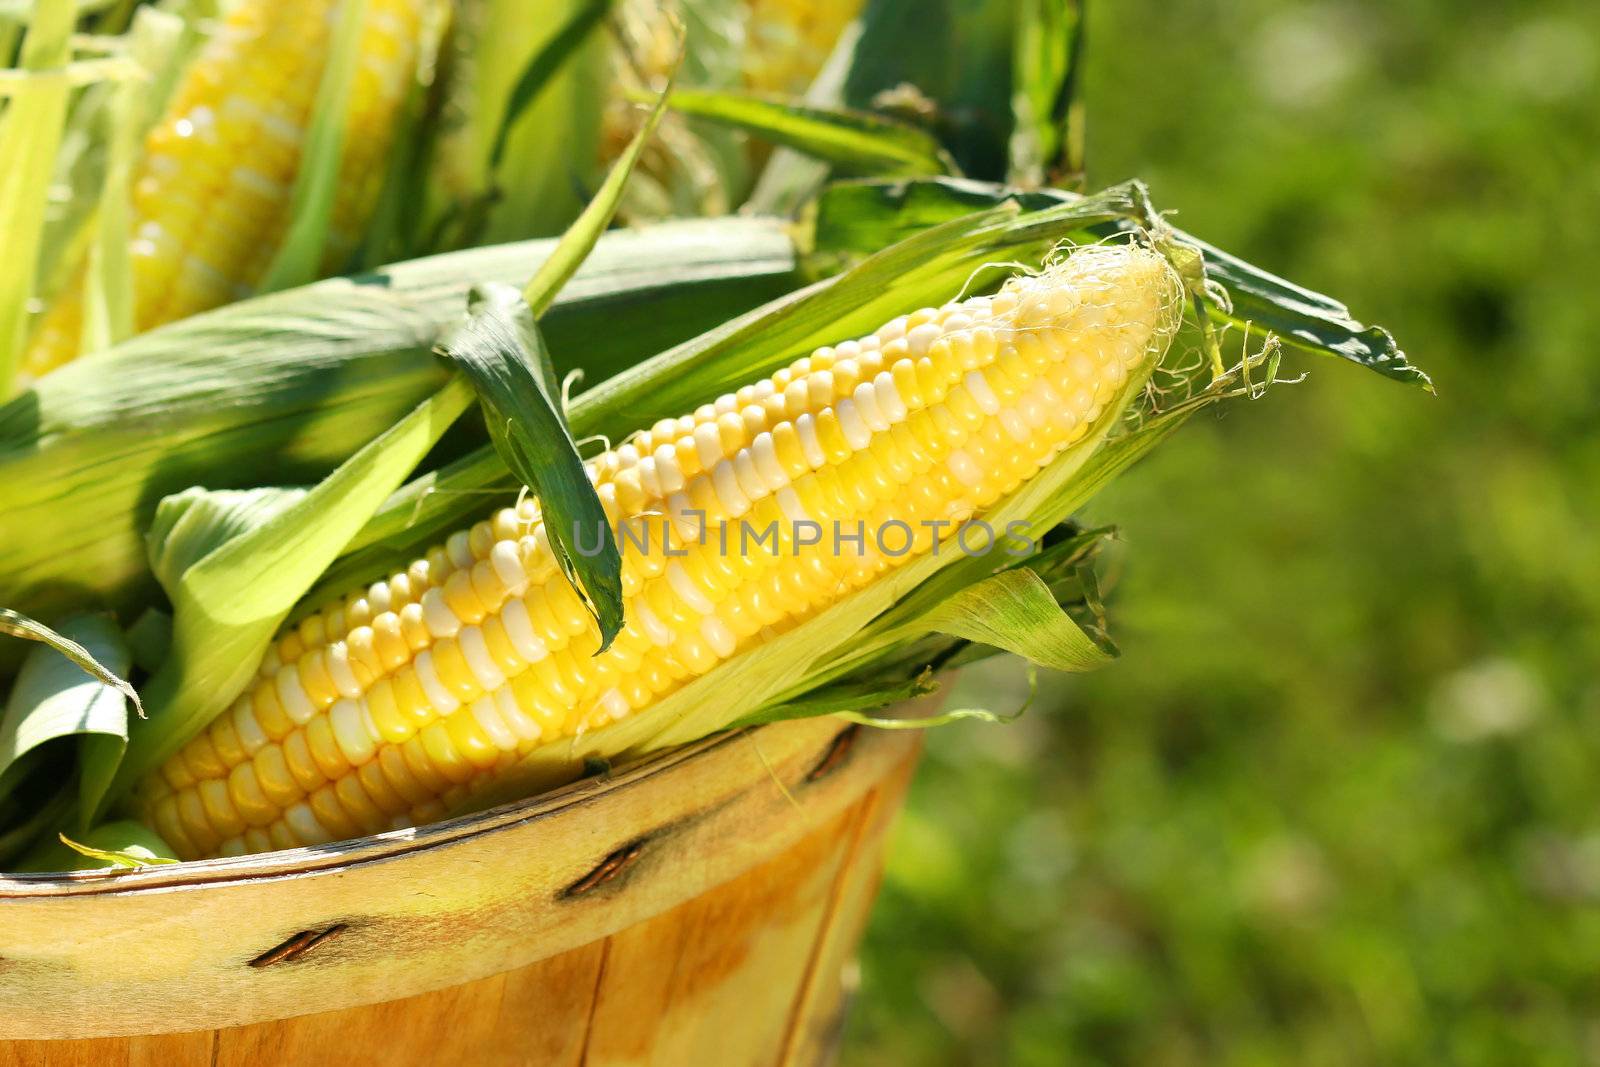 Corn in an apple basket by Sandralise